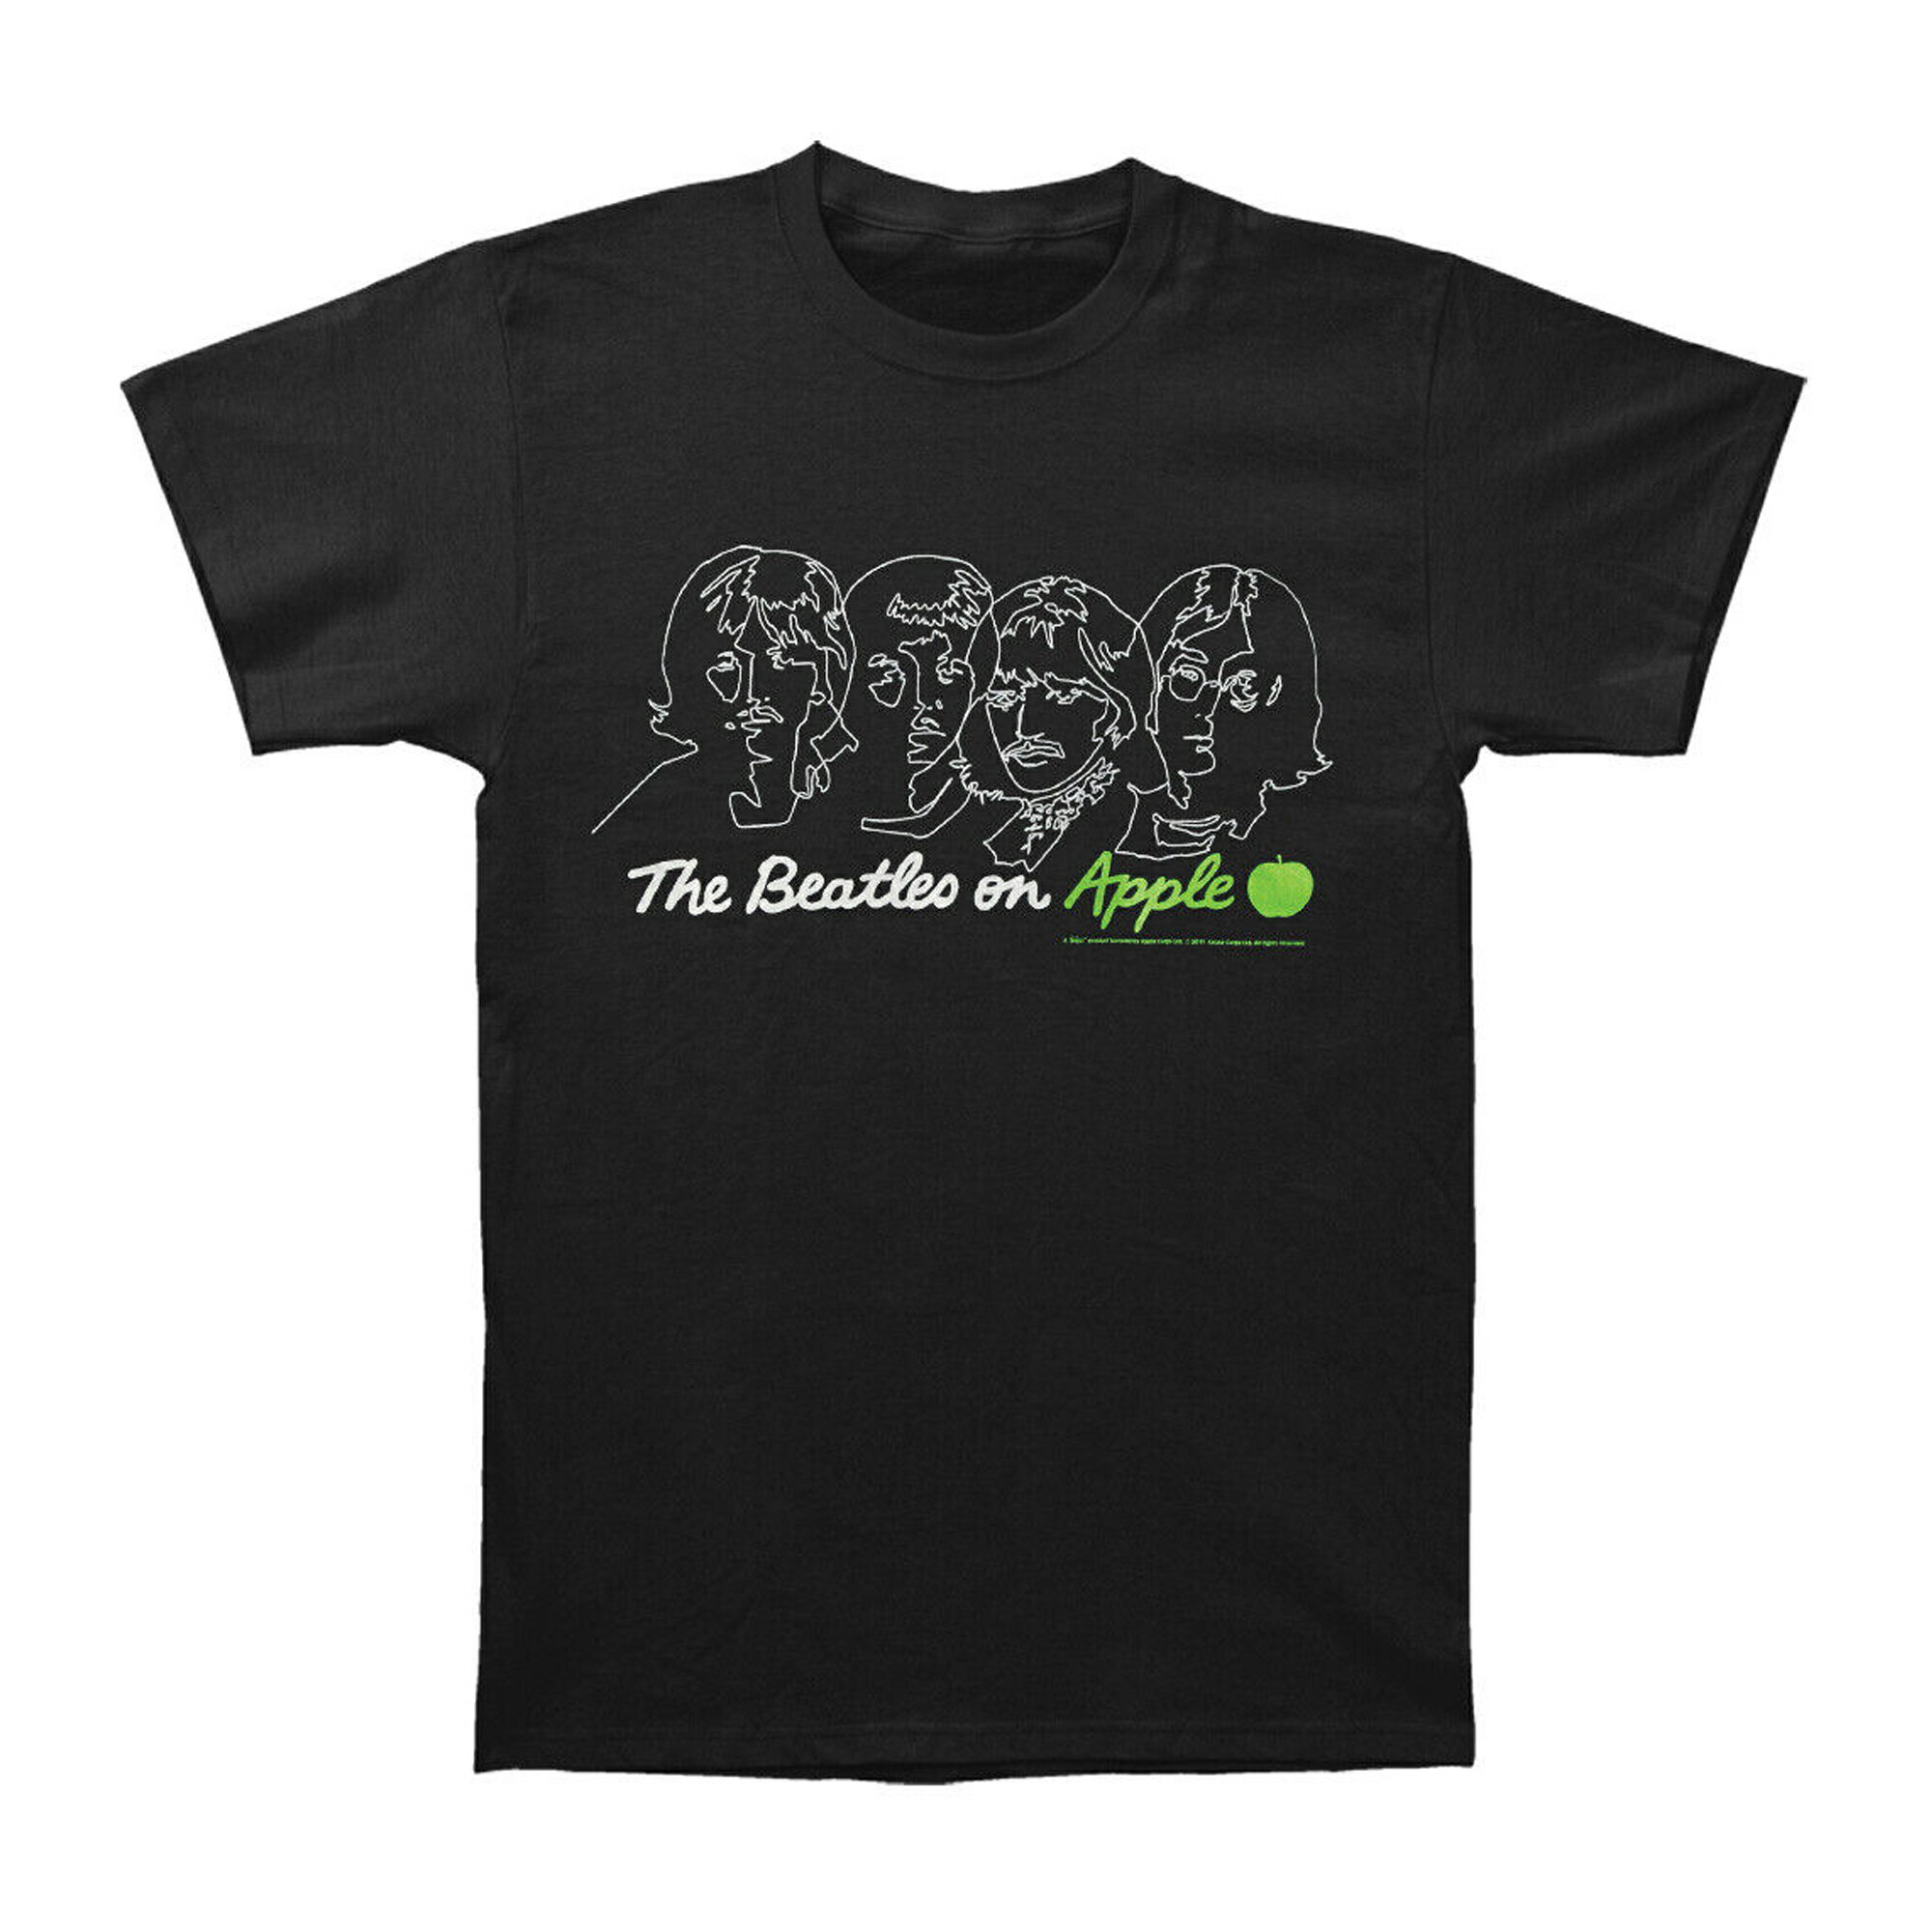 (ビートルズ) The Beatles オフィシャル商品 レディース On Apple バックプリント Tシャツ 半袖 トップス 【海外通販】